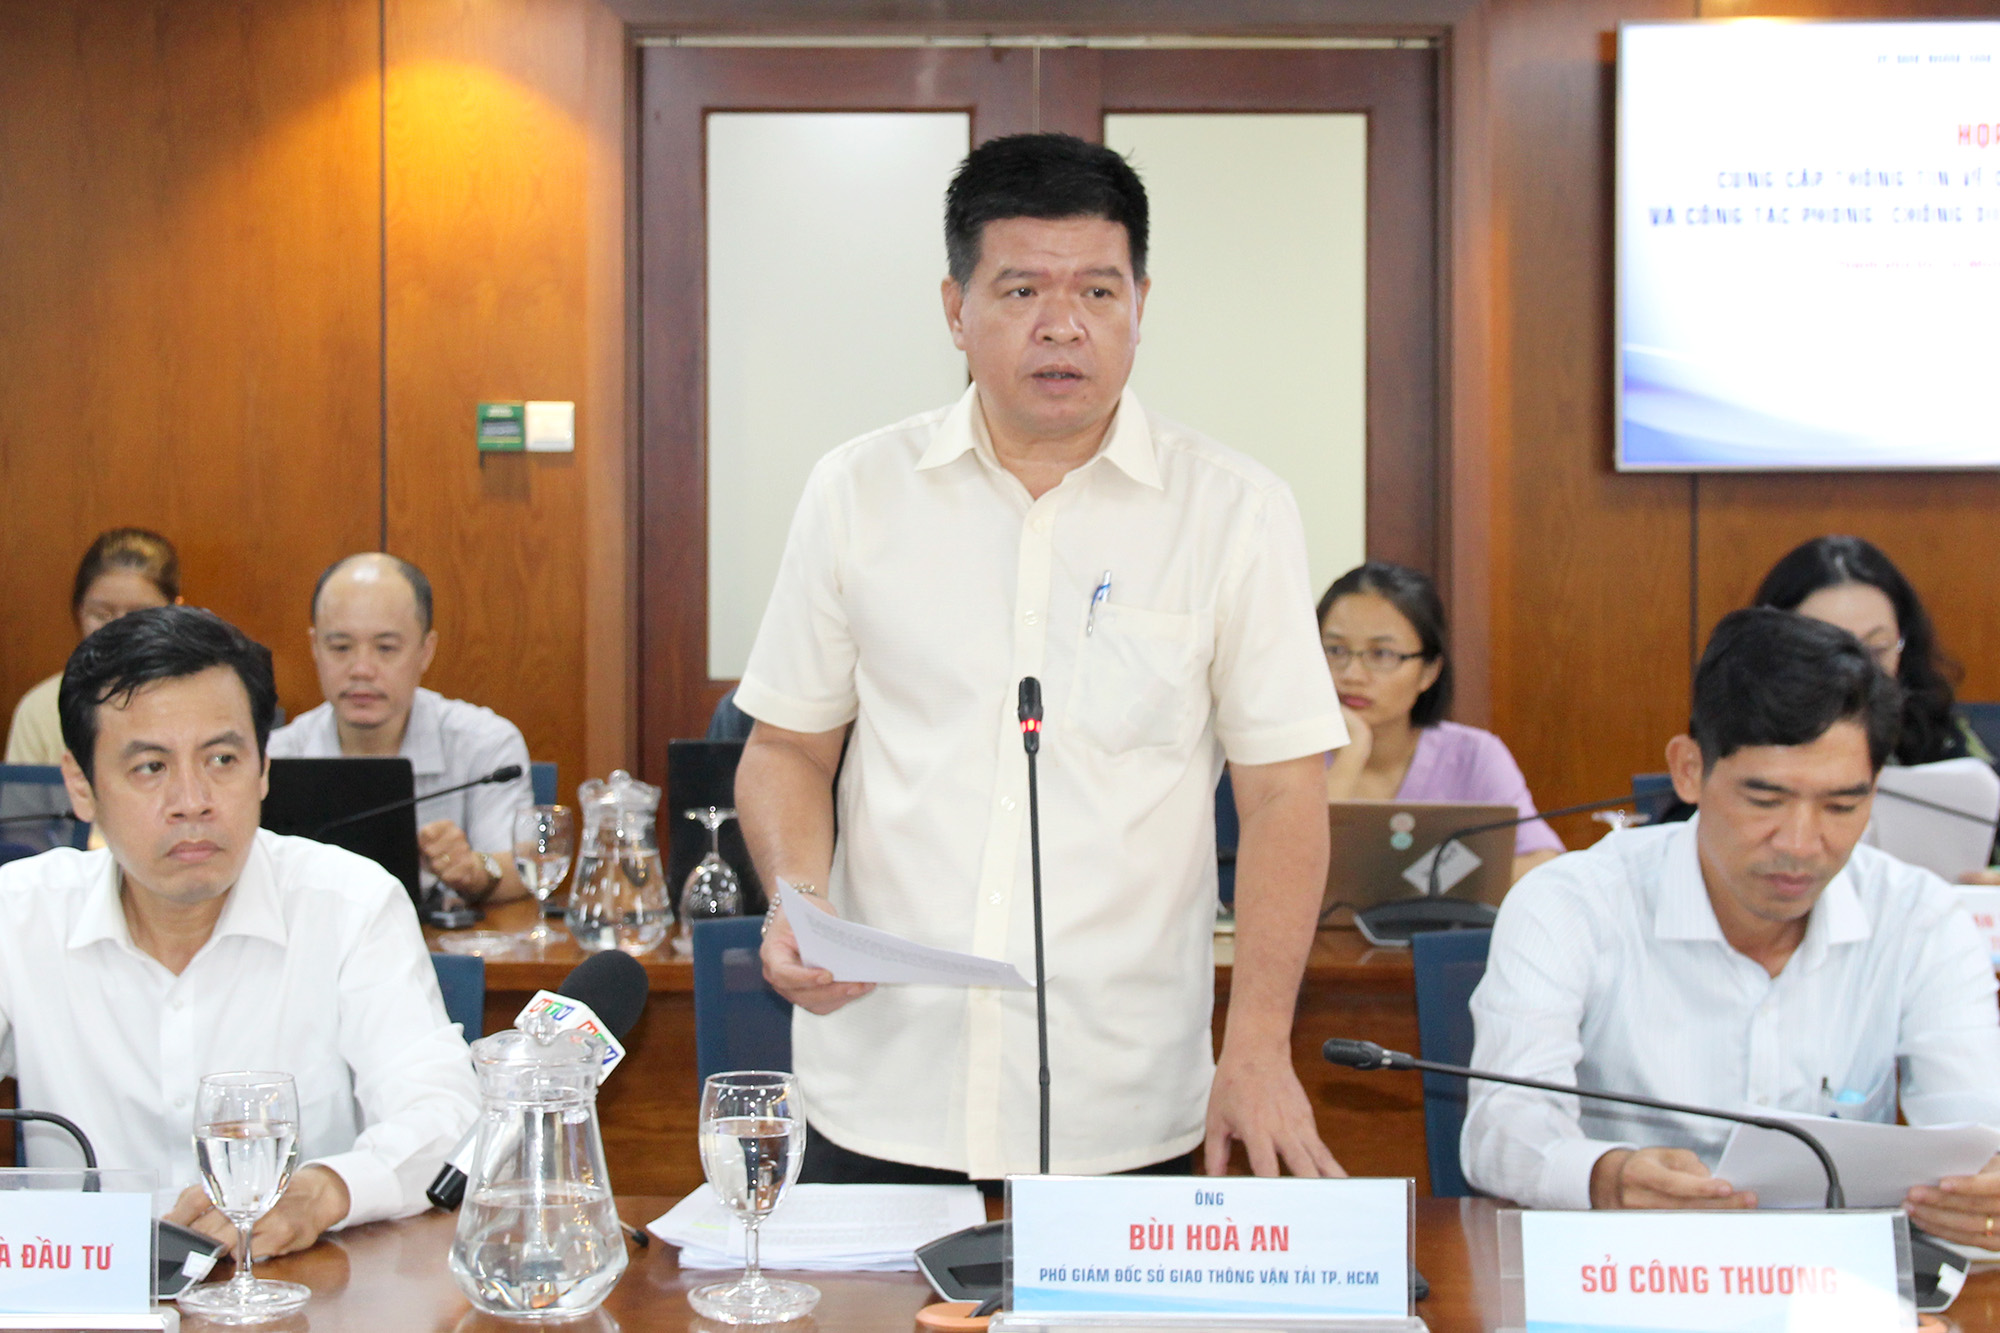 Đồng chí Bùi Hòa An – Phó Giám đốc Sở Giao thông Vận tải TP. Hồ Chí Minh phát biểu tại buổi họp báo (Ảnh: H.H).